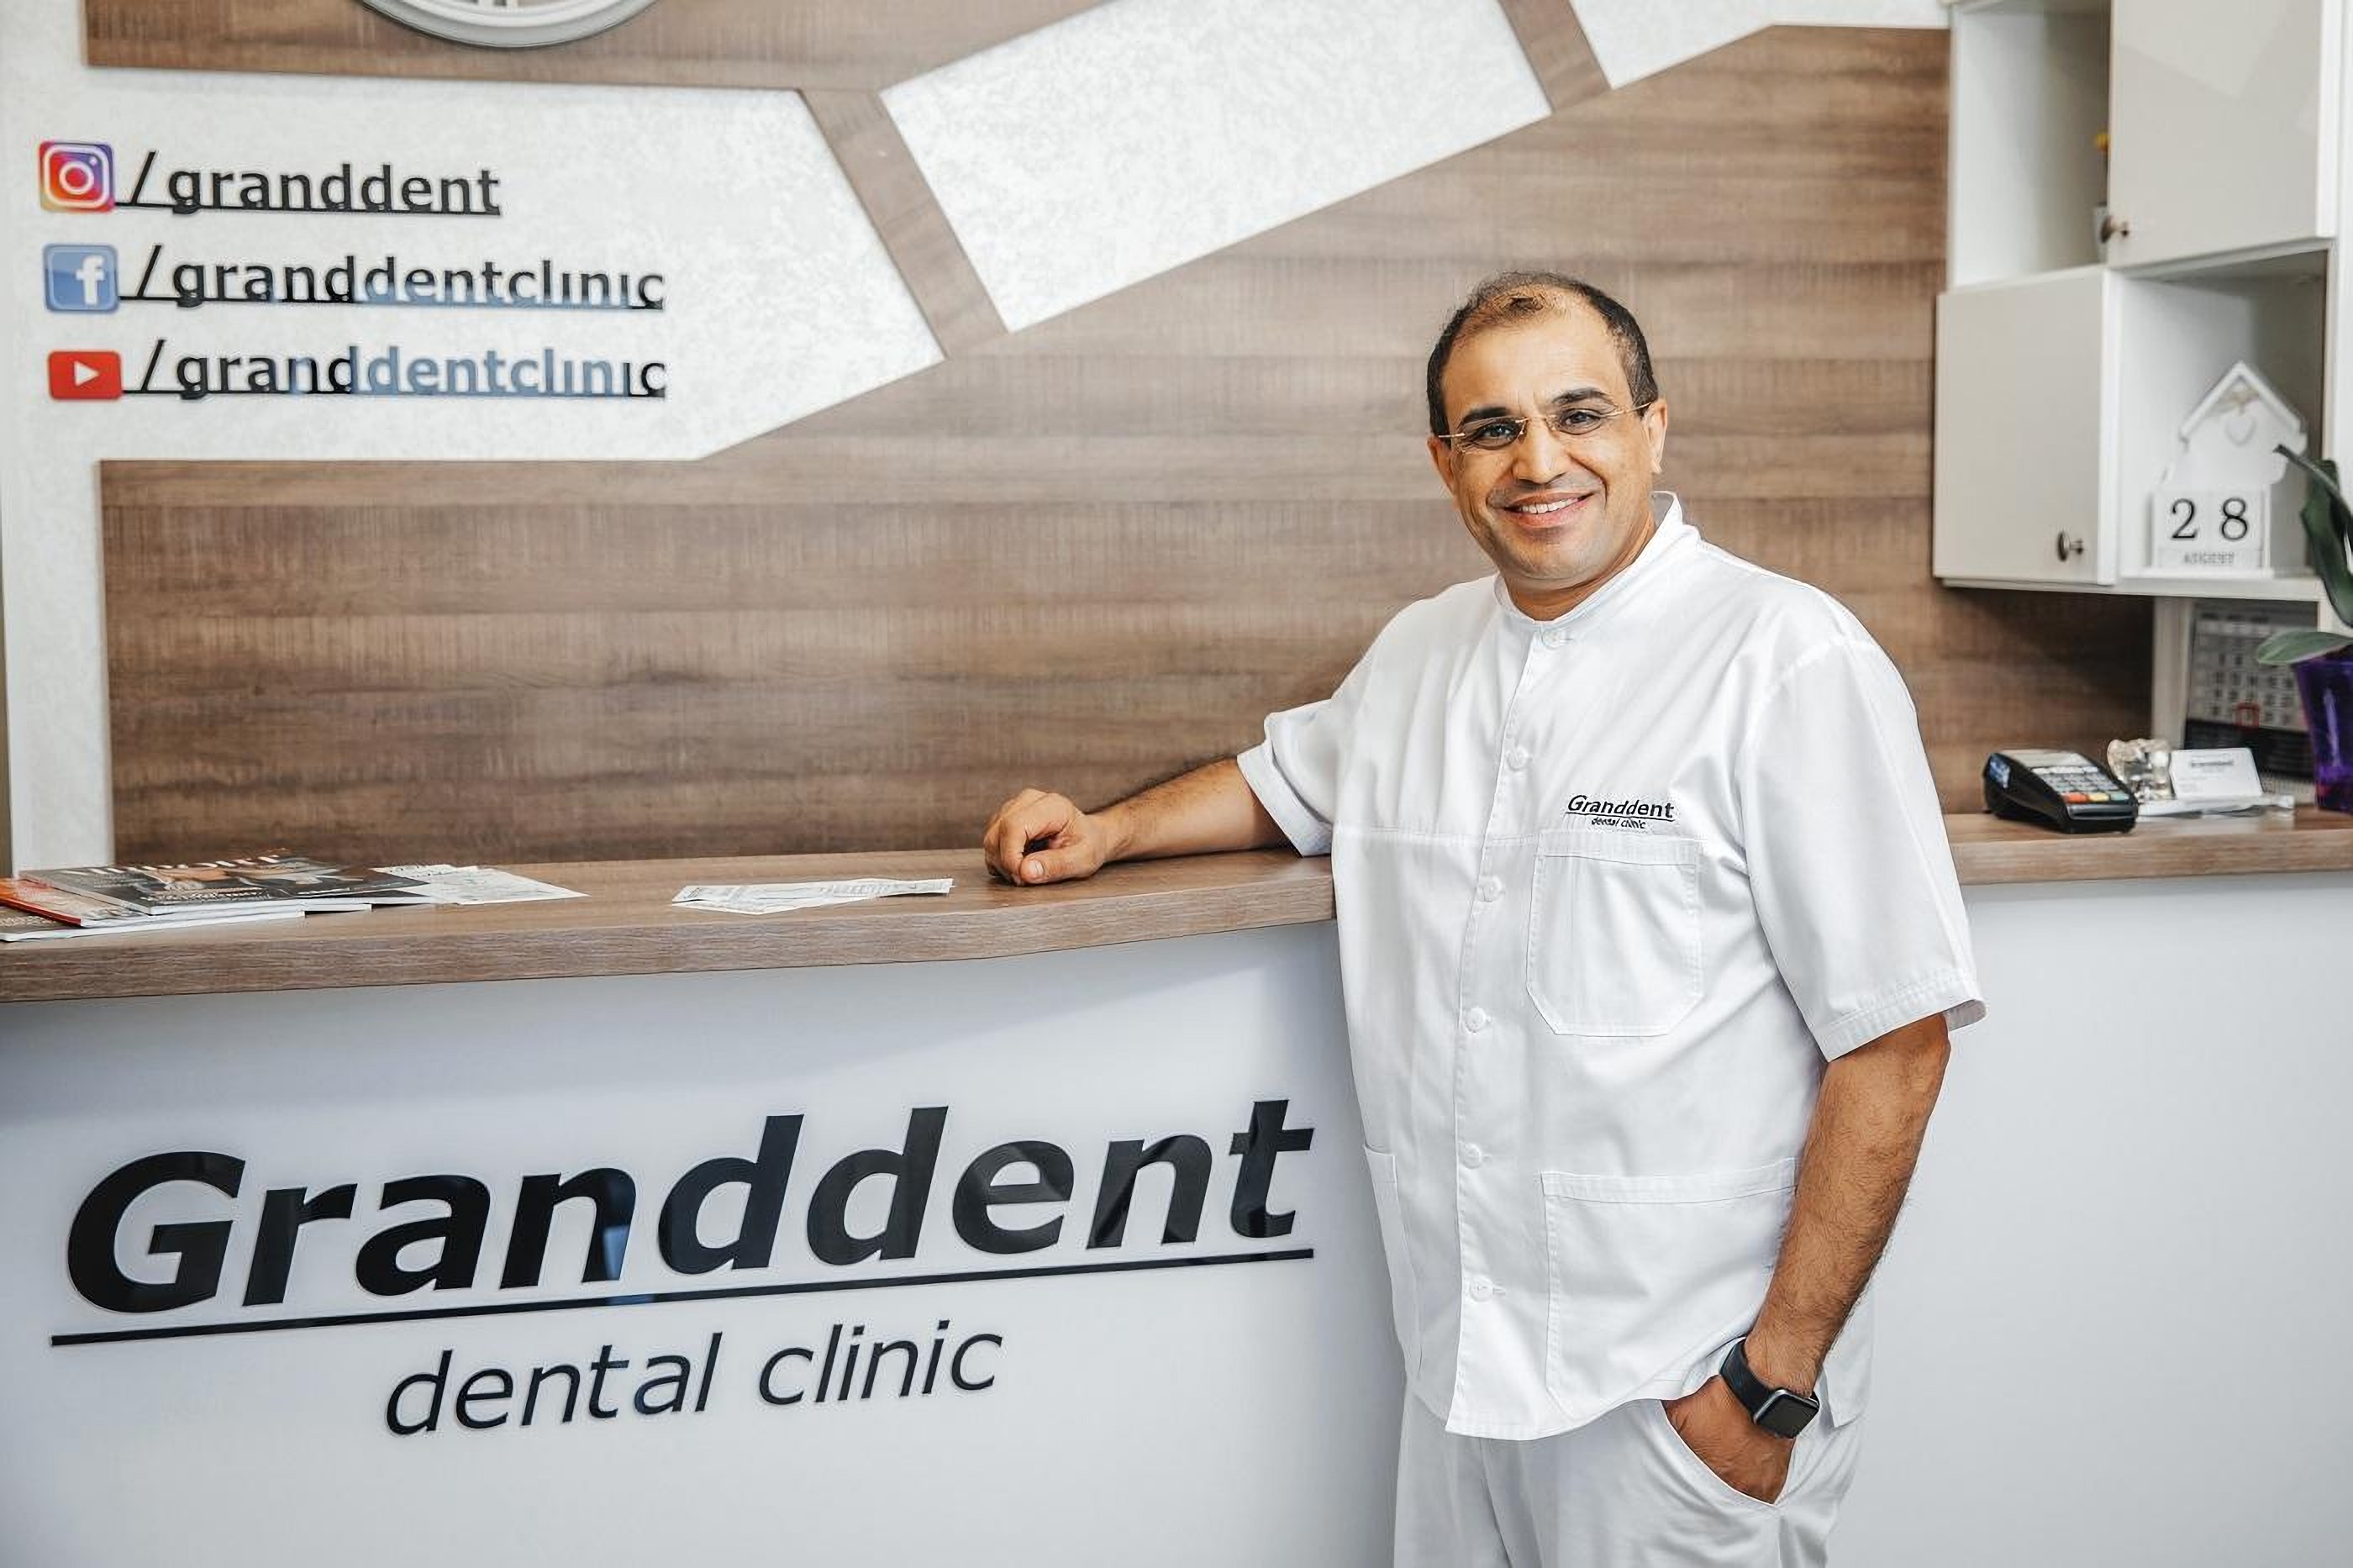 Руководитель стоматологической клиники Granddent в Одессе